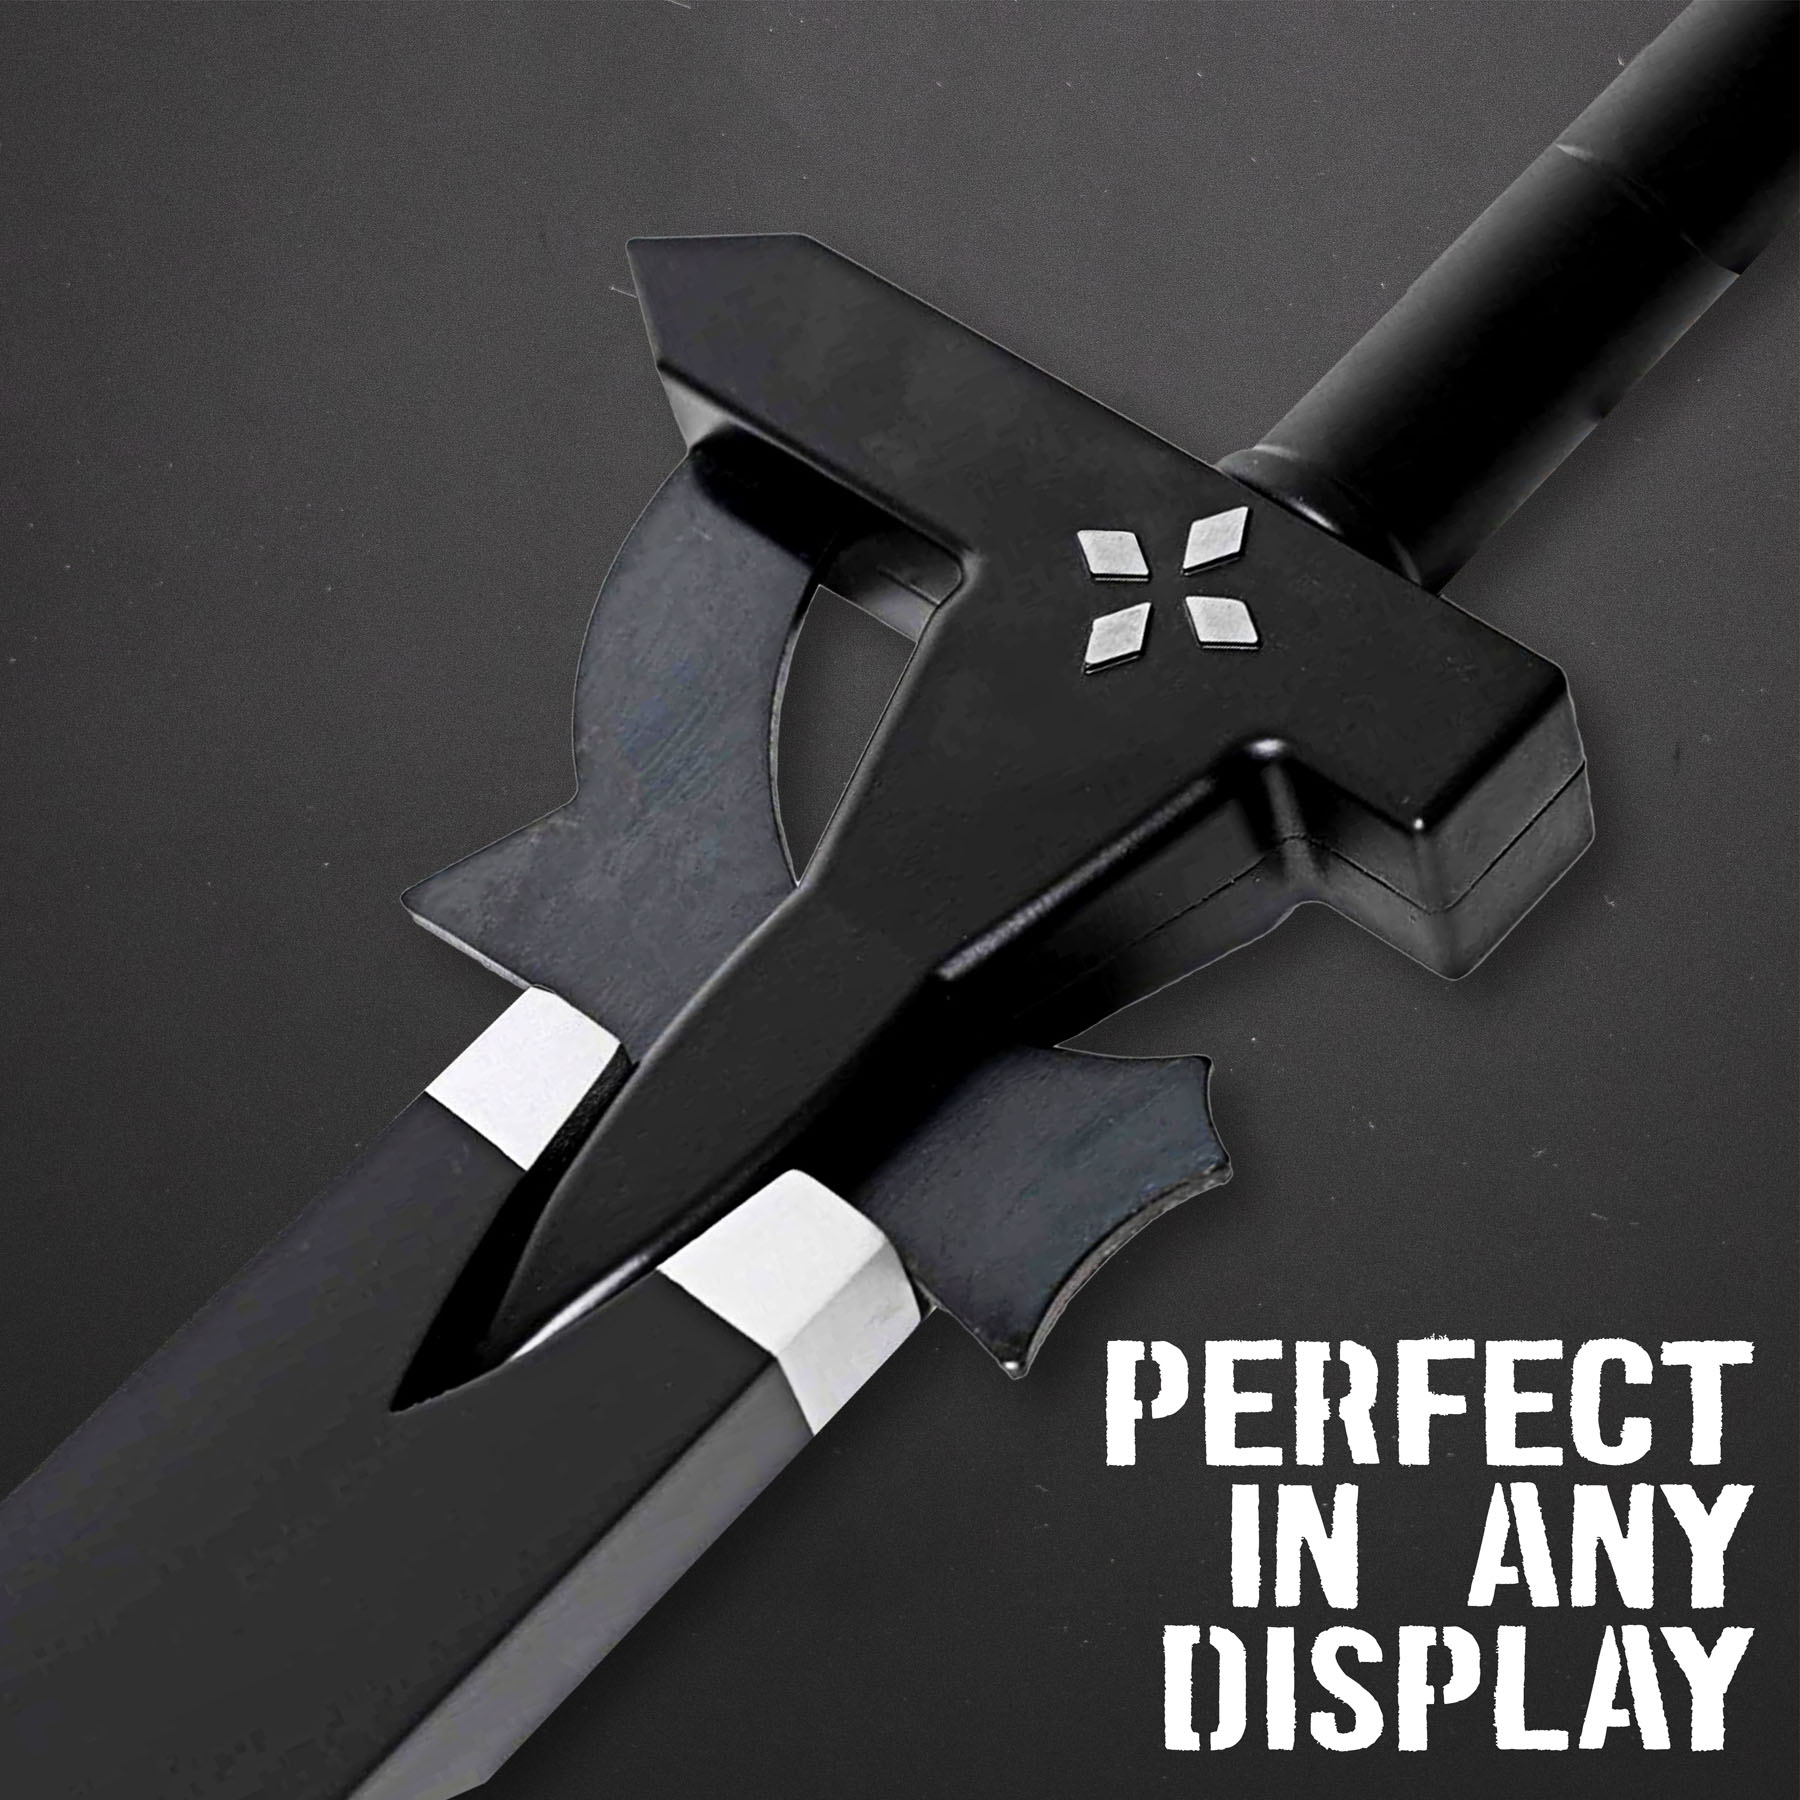 Sword art online - Kirito´s Elucidator - decorative version